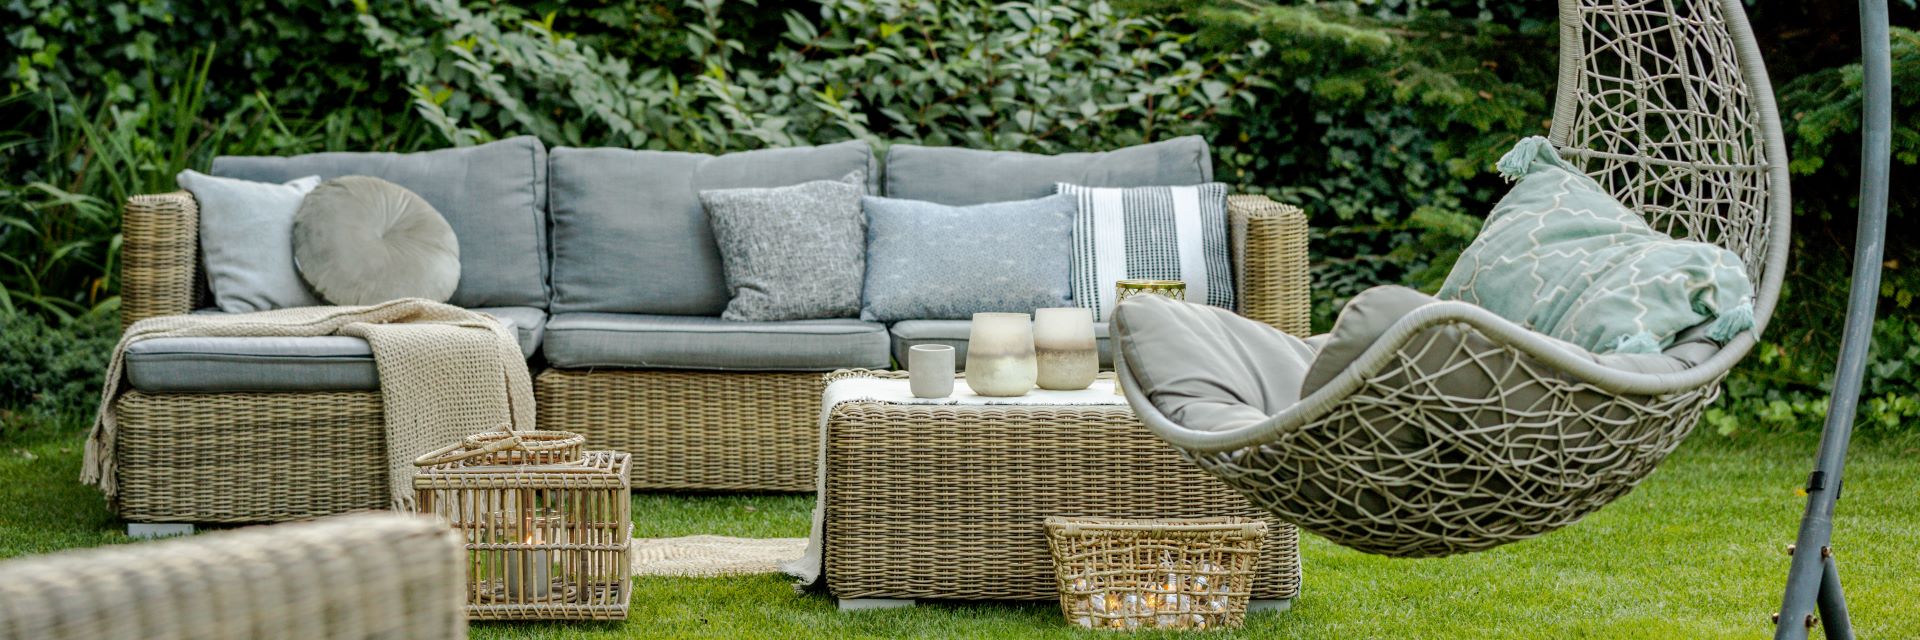 Bequeme Gartenmöbel aus Geflecht mit grauen Kissen in einem schönen Garten